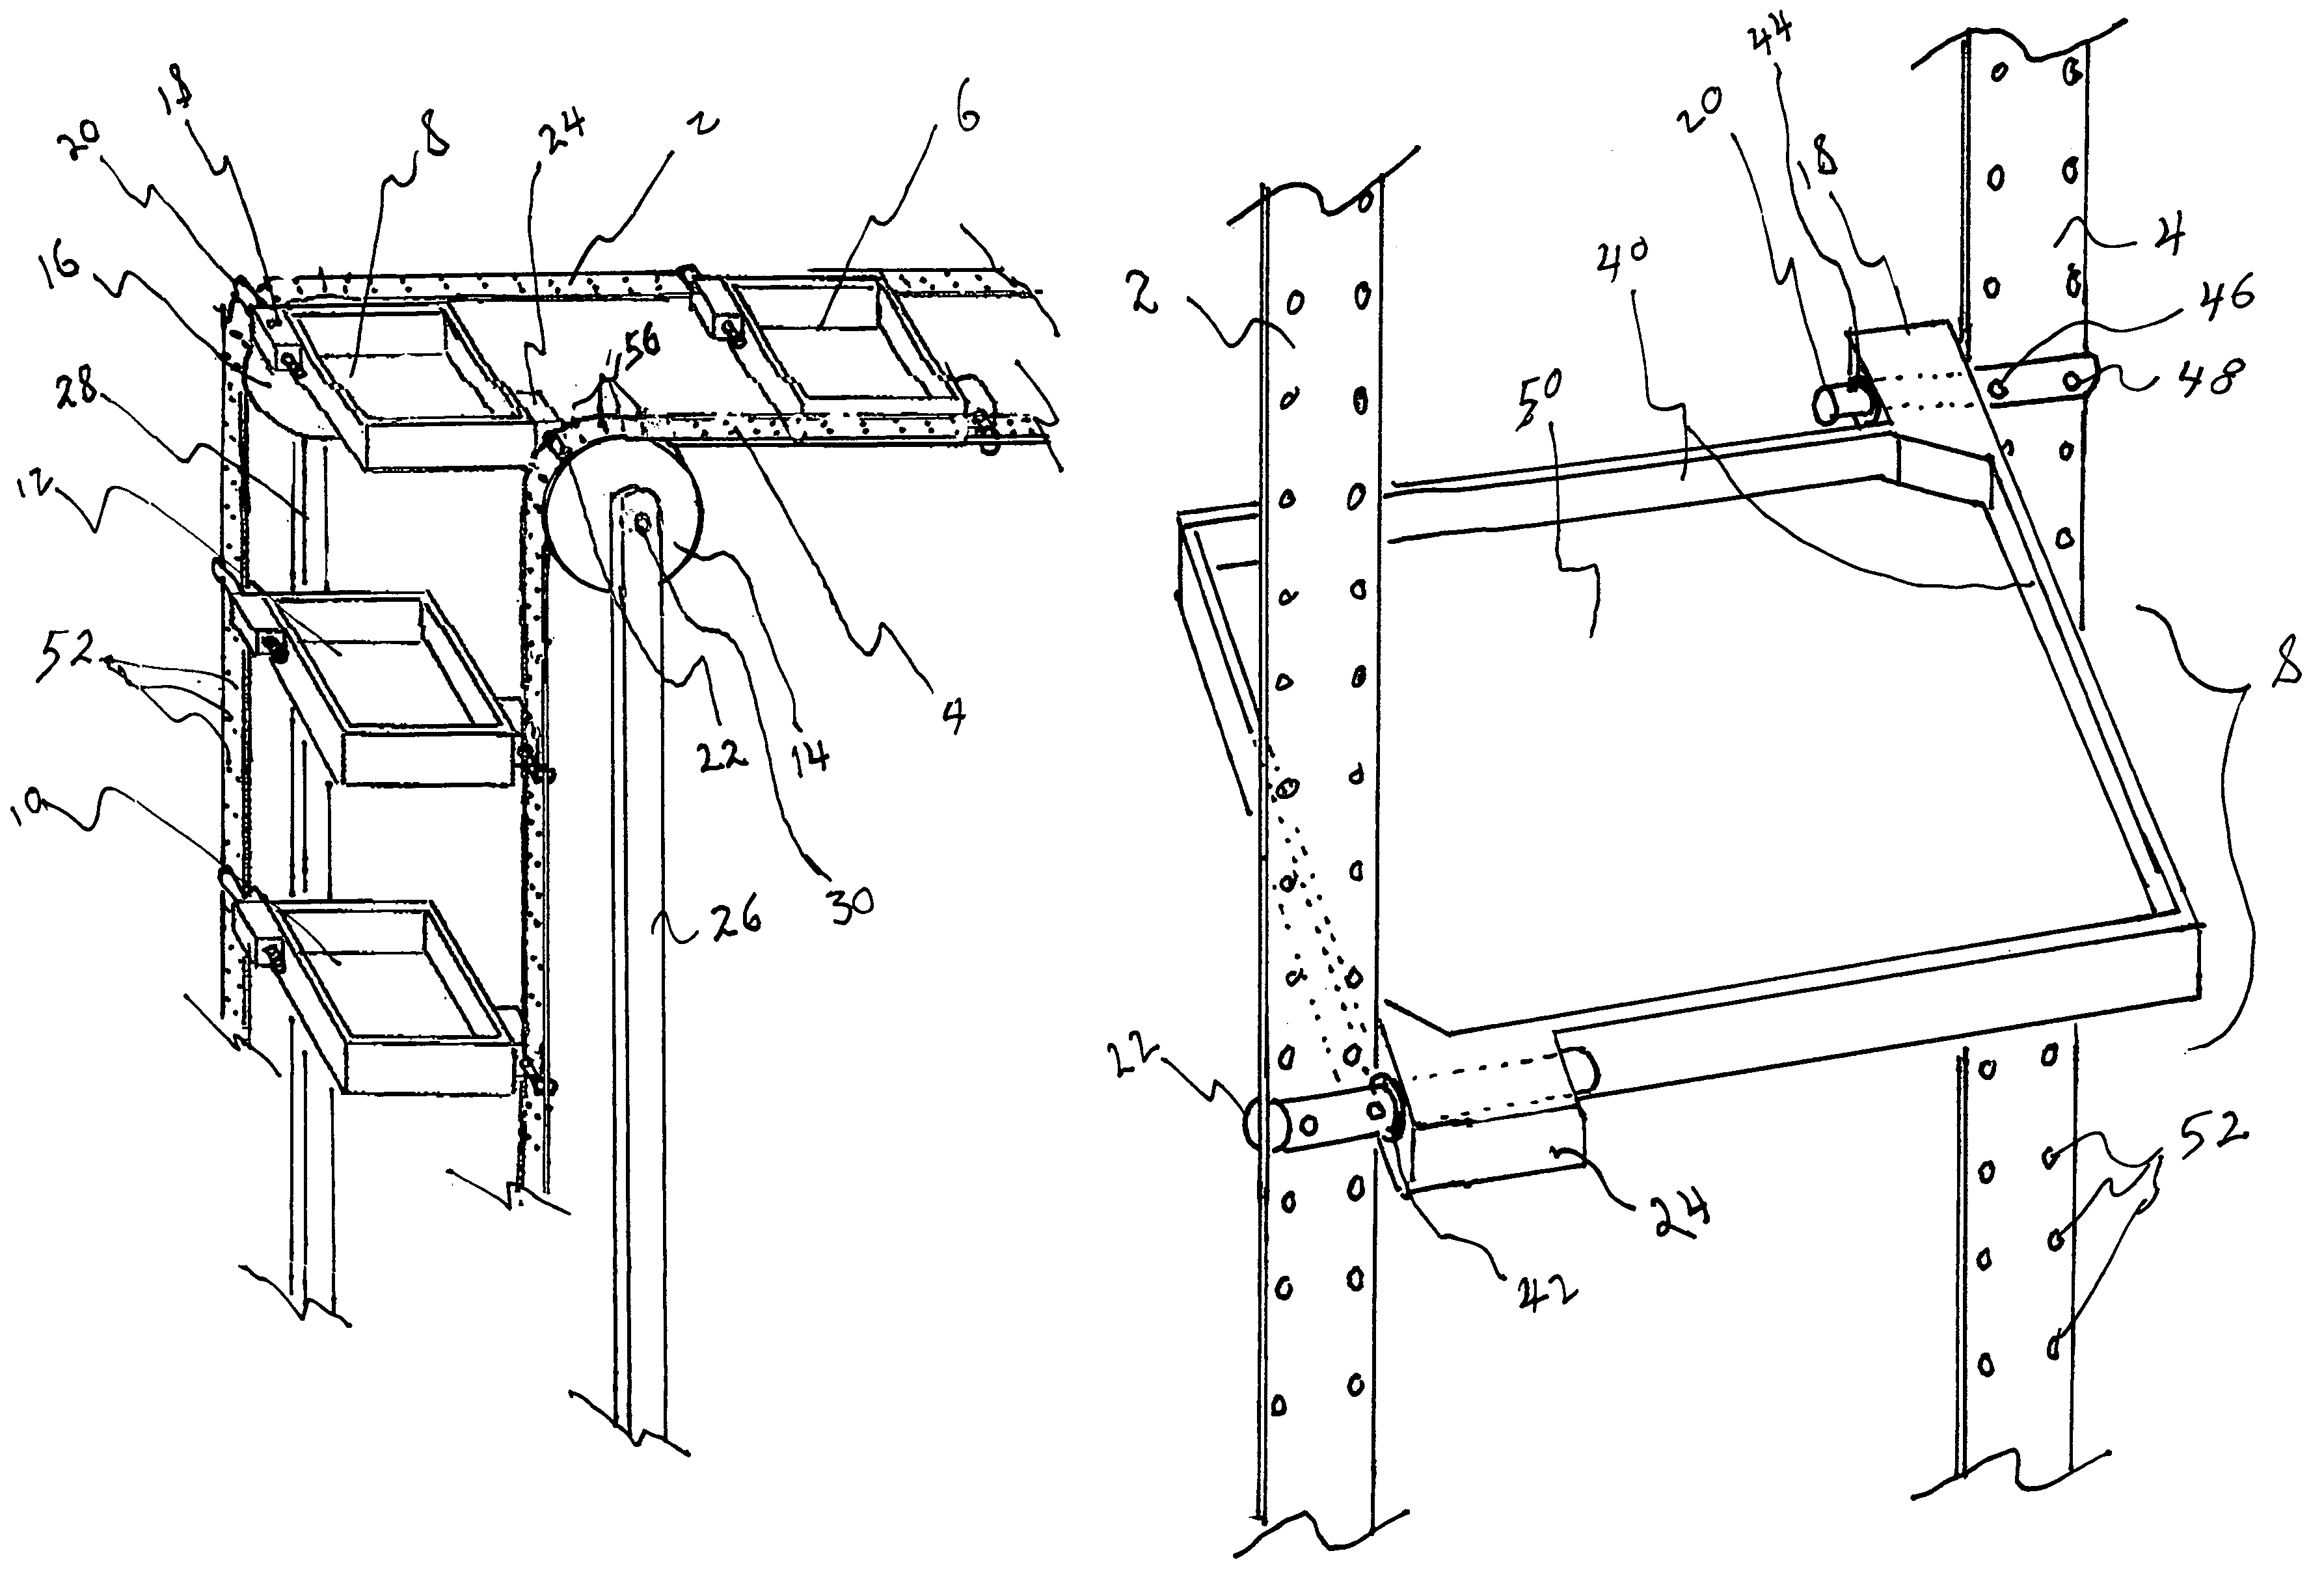 Multi-directional conveyor